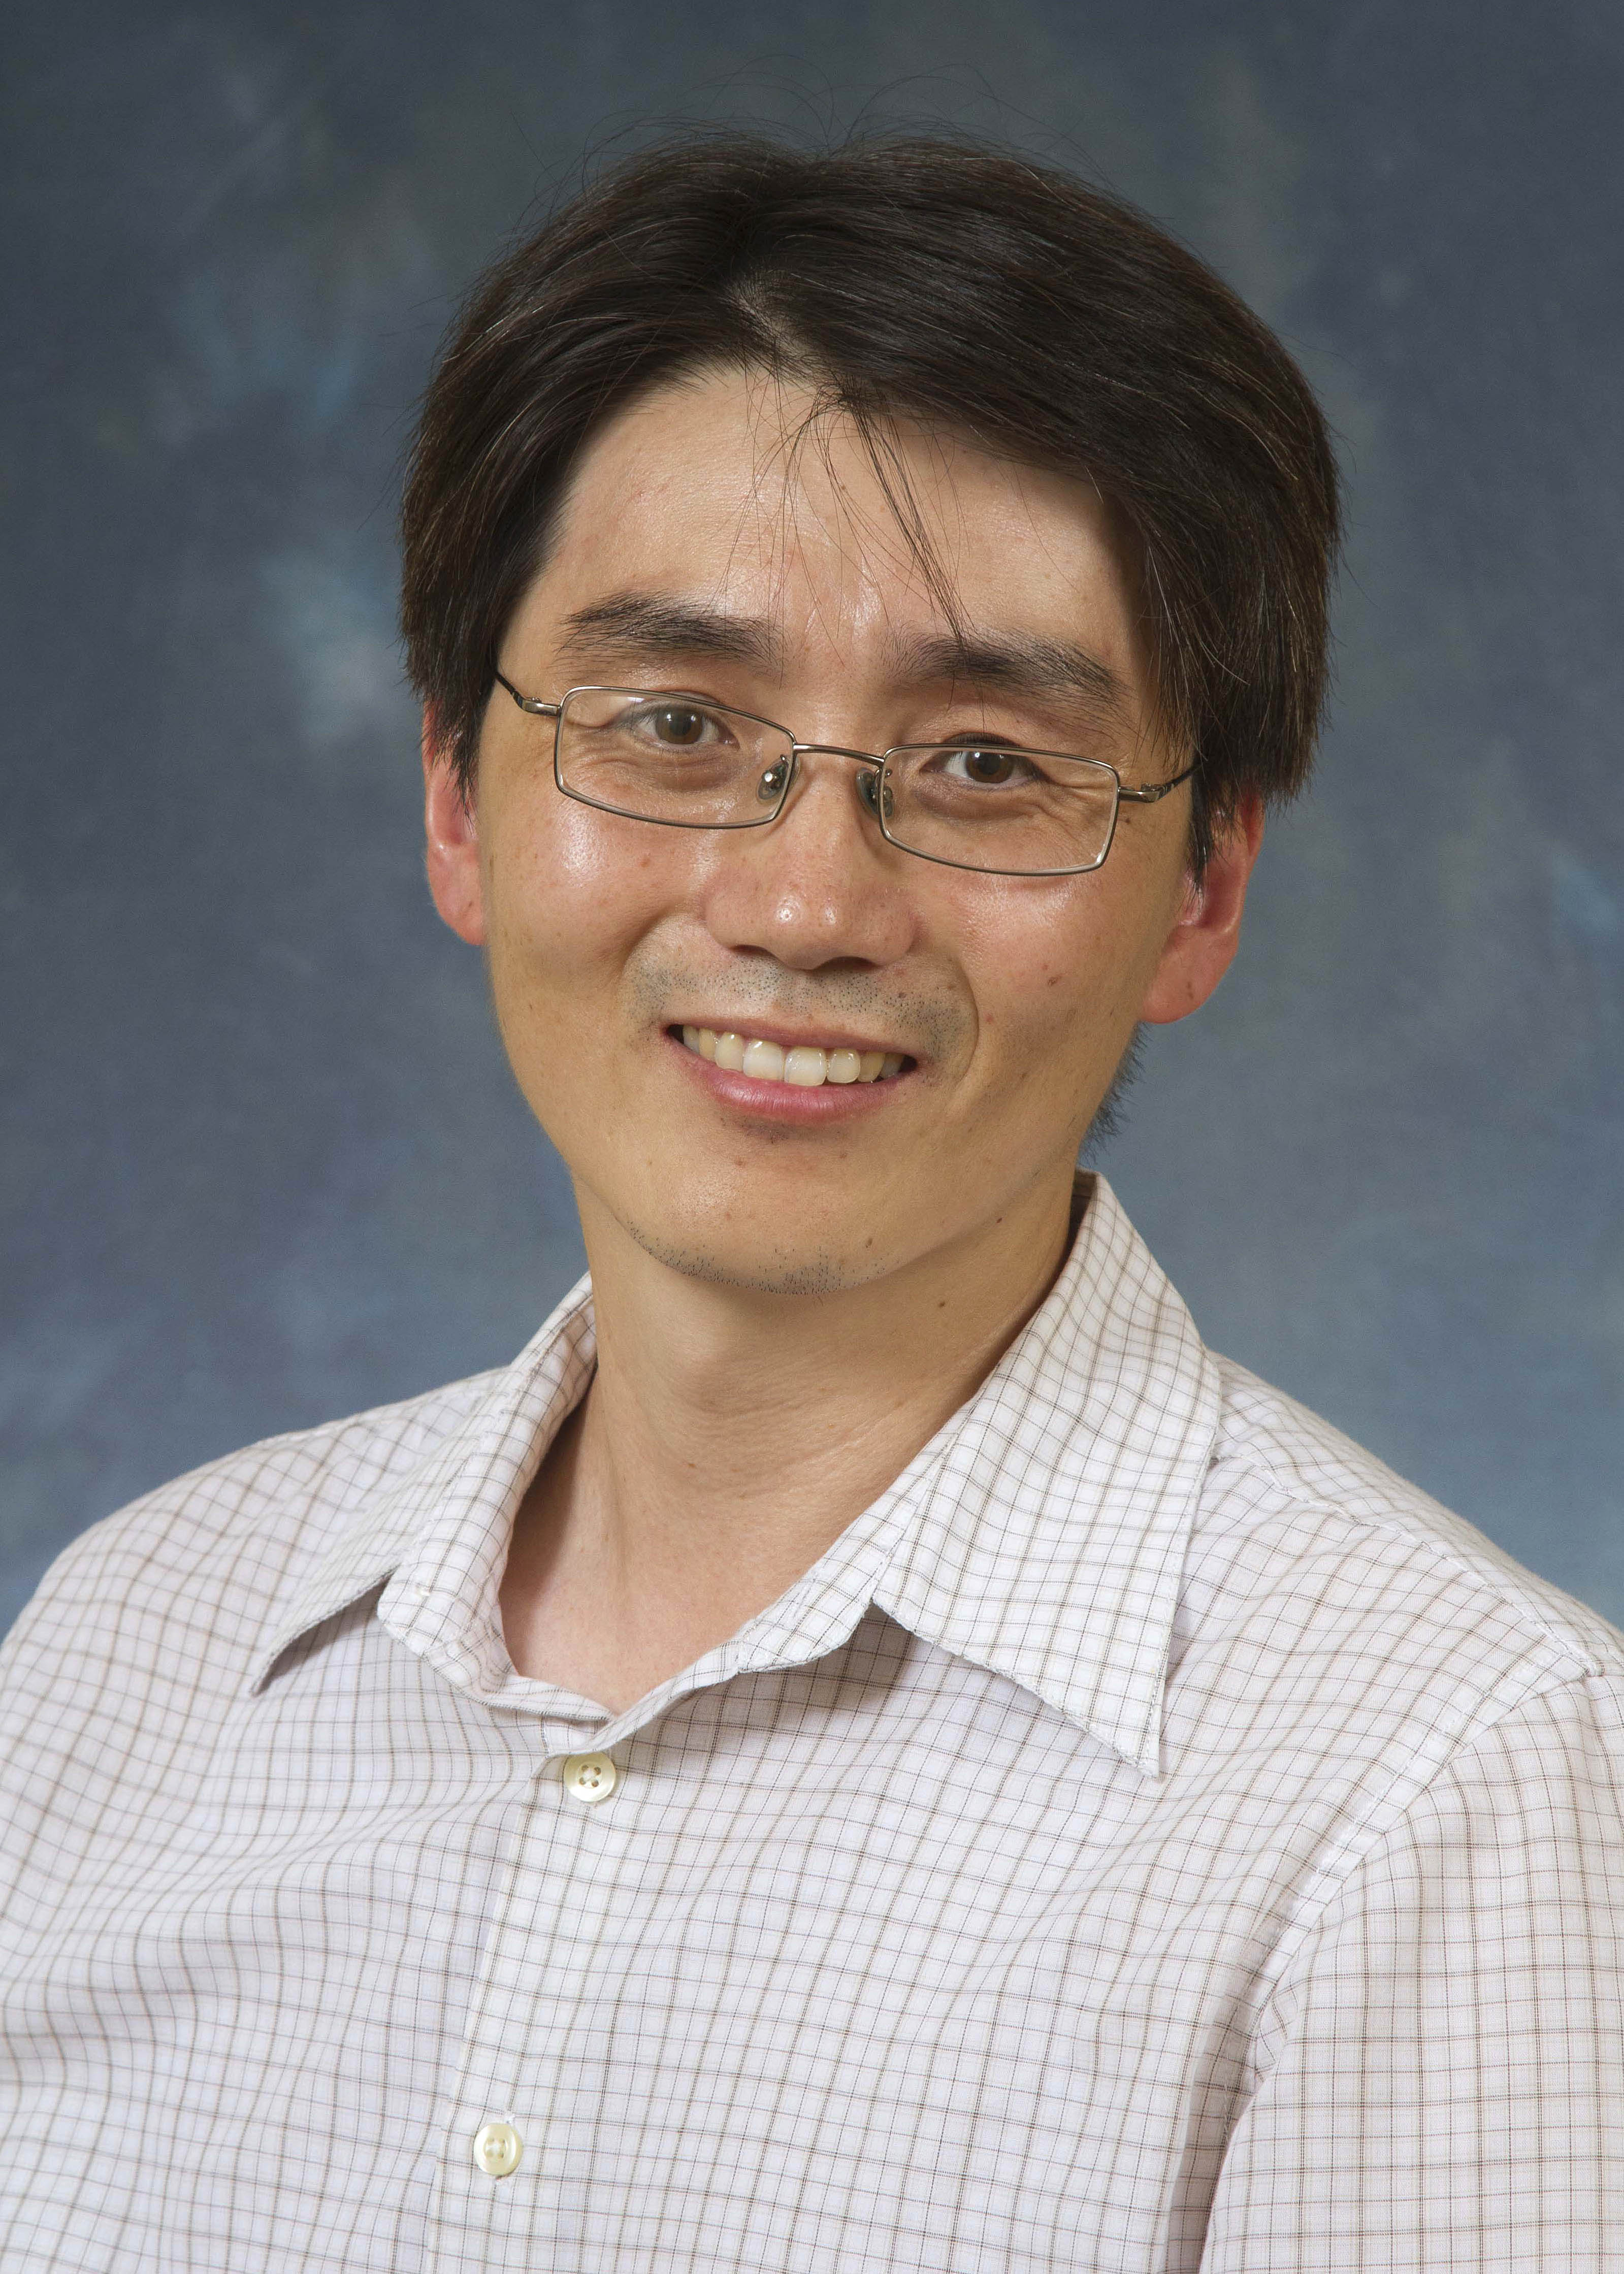 Daesang Kim, Ph.D.